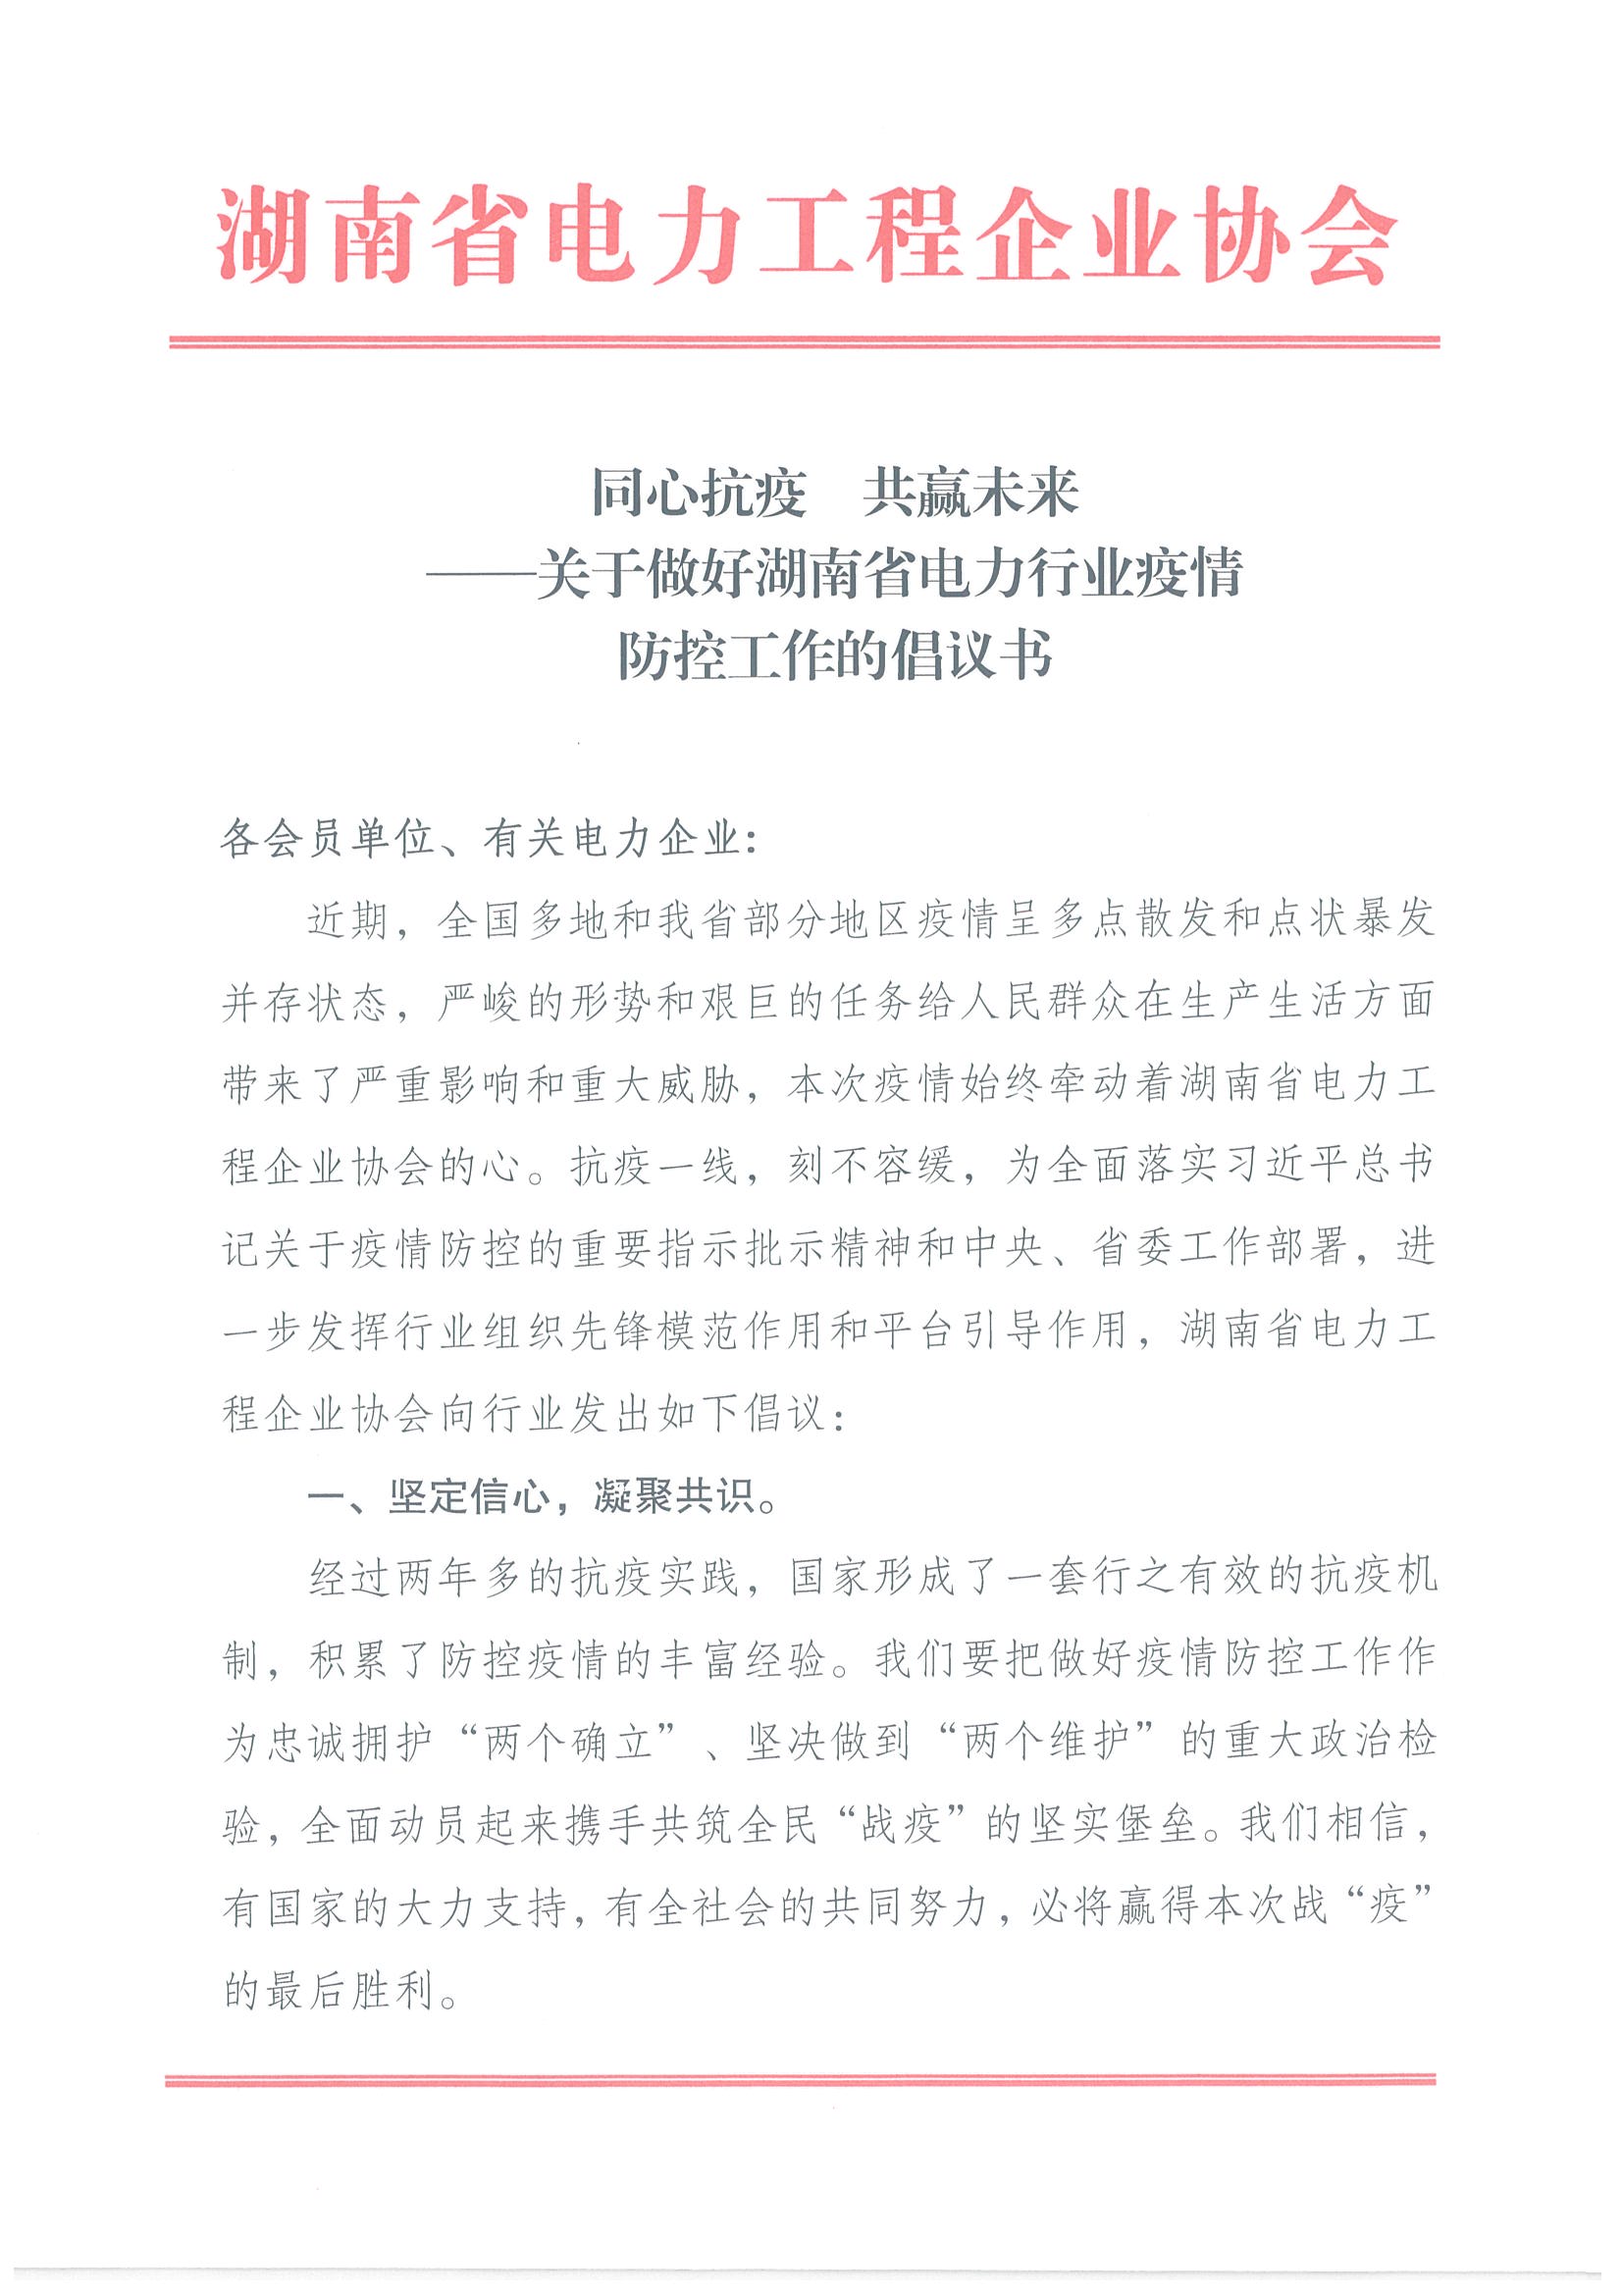 同心抗疫  共赢未来 ——关于做好湖南省电力行业疫情 防控工作的倡议书